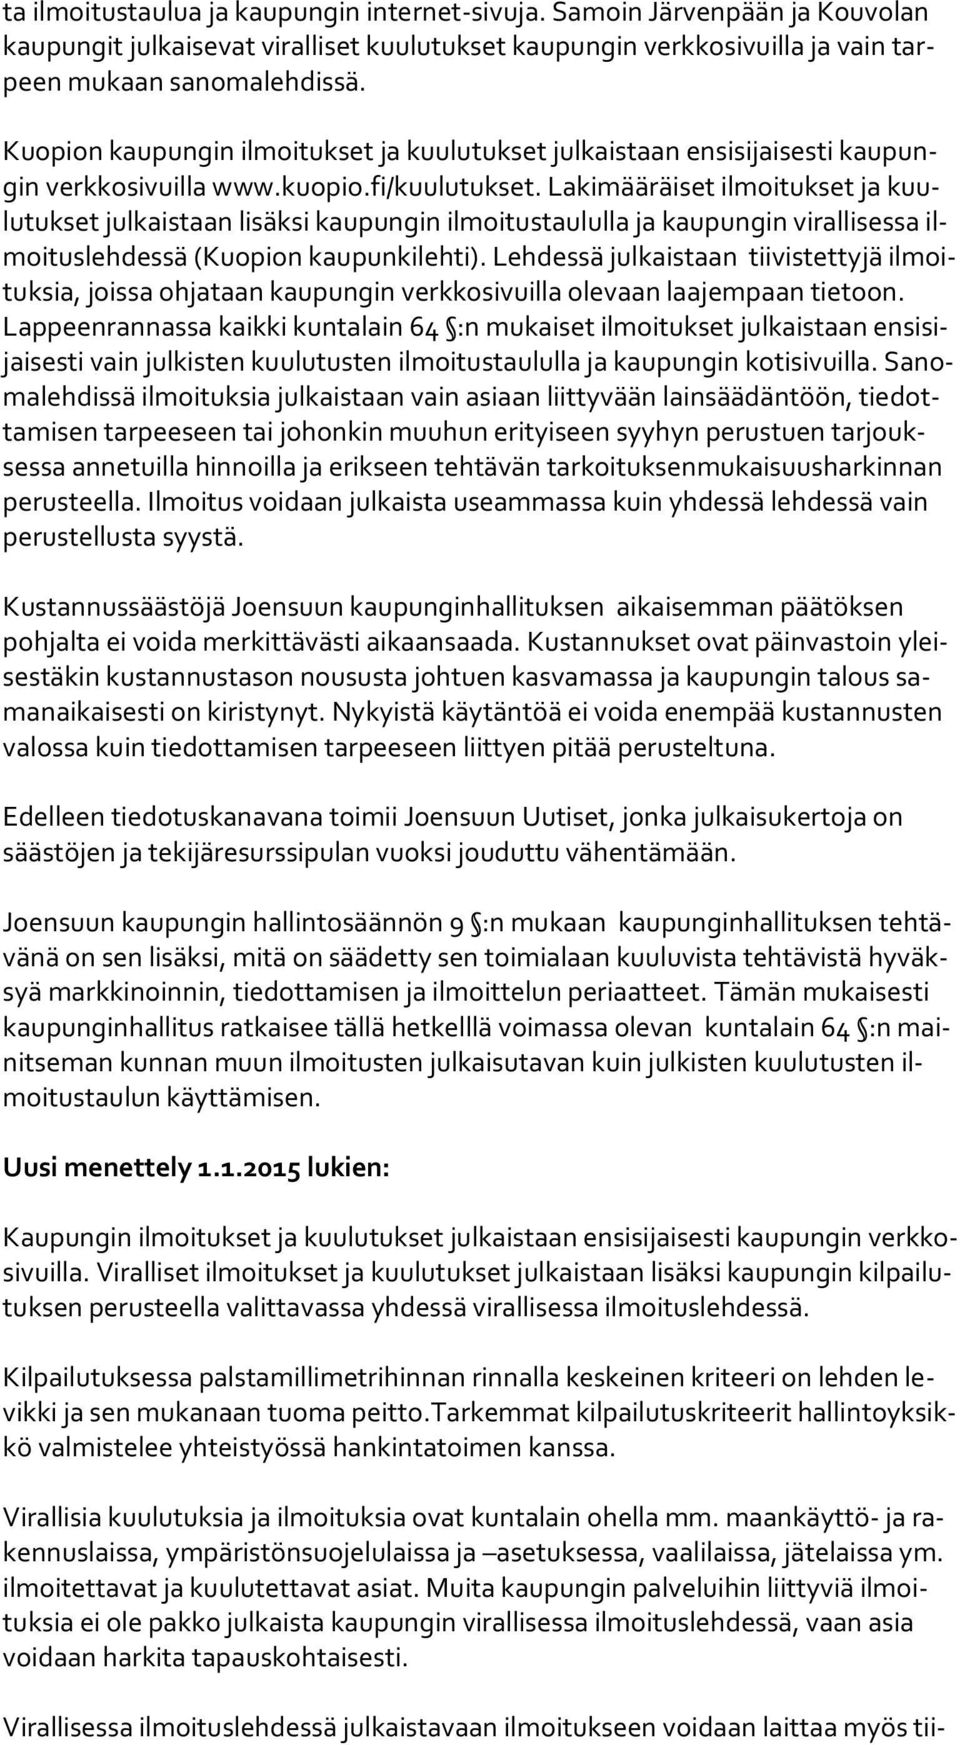 Lakimääräiset ilmoitukset ja kuulu tuk set julkaistaan lisäksi kaupungin ilmoitustaululla ja kaupungin virallisessa ilmoi tus leh des sä (Kuopion kaupunkilehti).